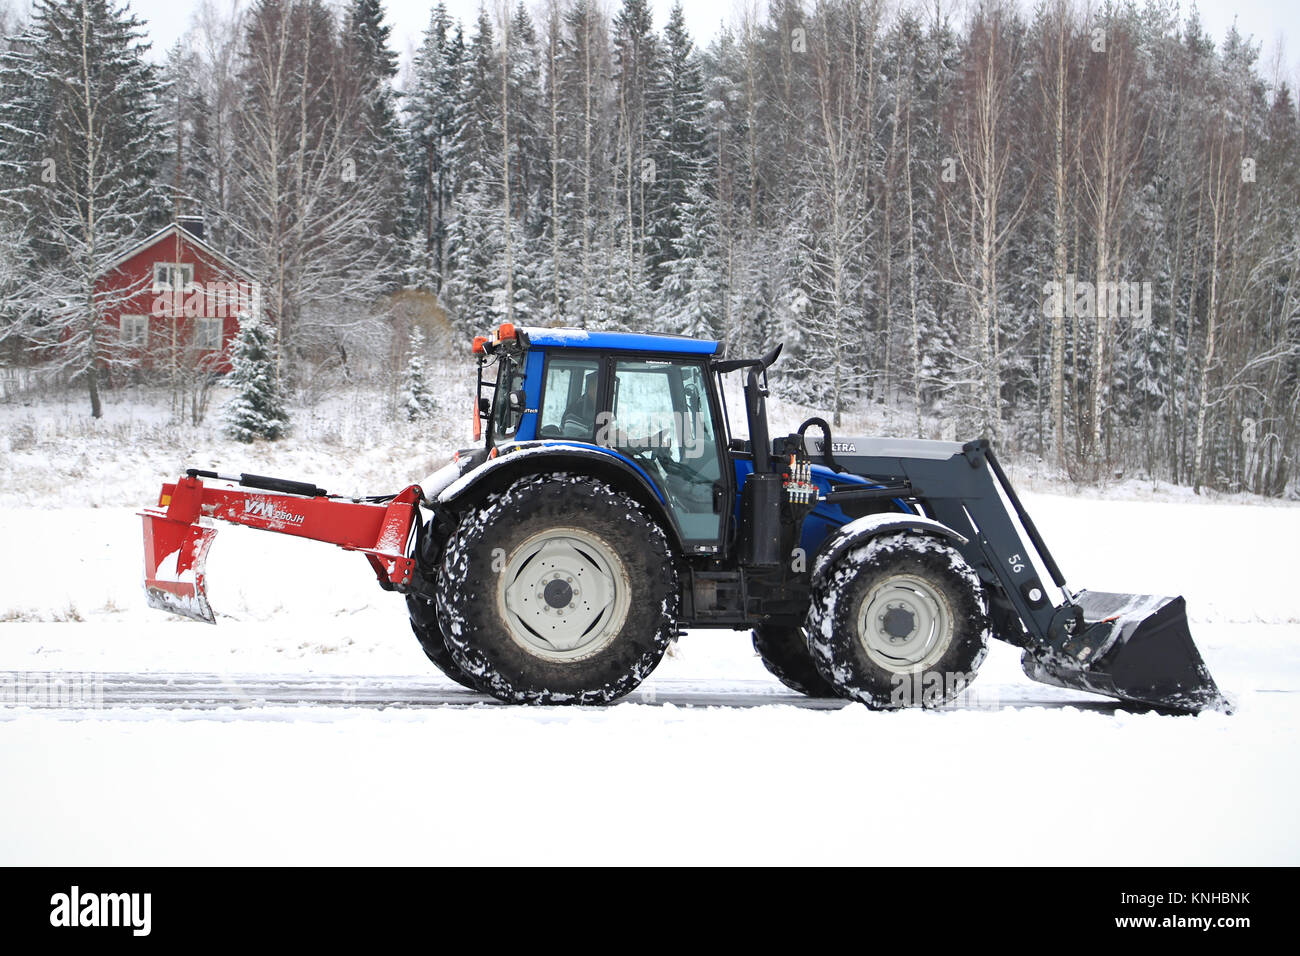 SALO, Finnland - 22. NOVEMBER 2014: Valtra Traktor entfernt Schnee mit Schaufel und VM Straße ziehen. In Finnland, Schnee Umzugskosten können erheblich sein. Stockfoto